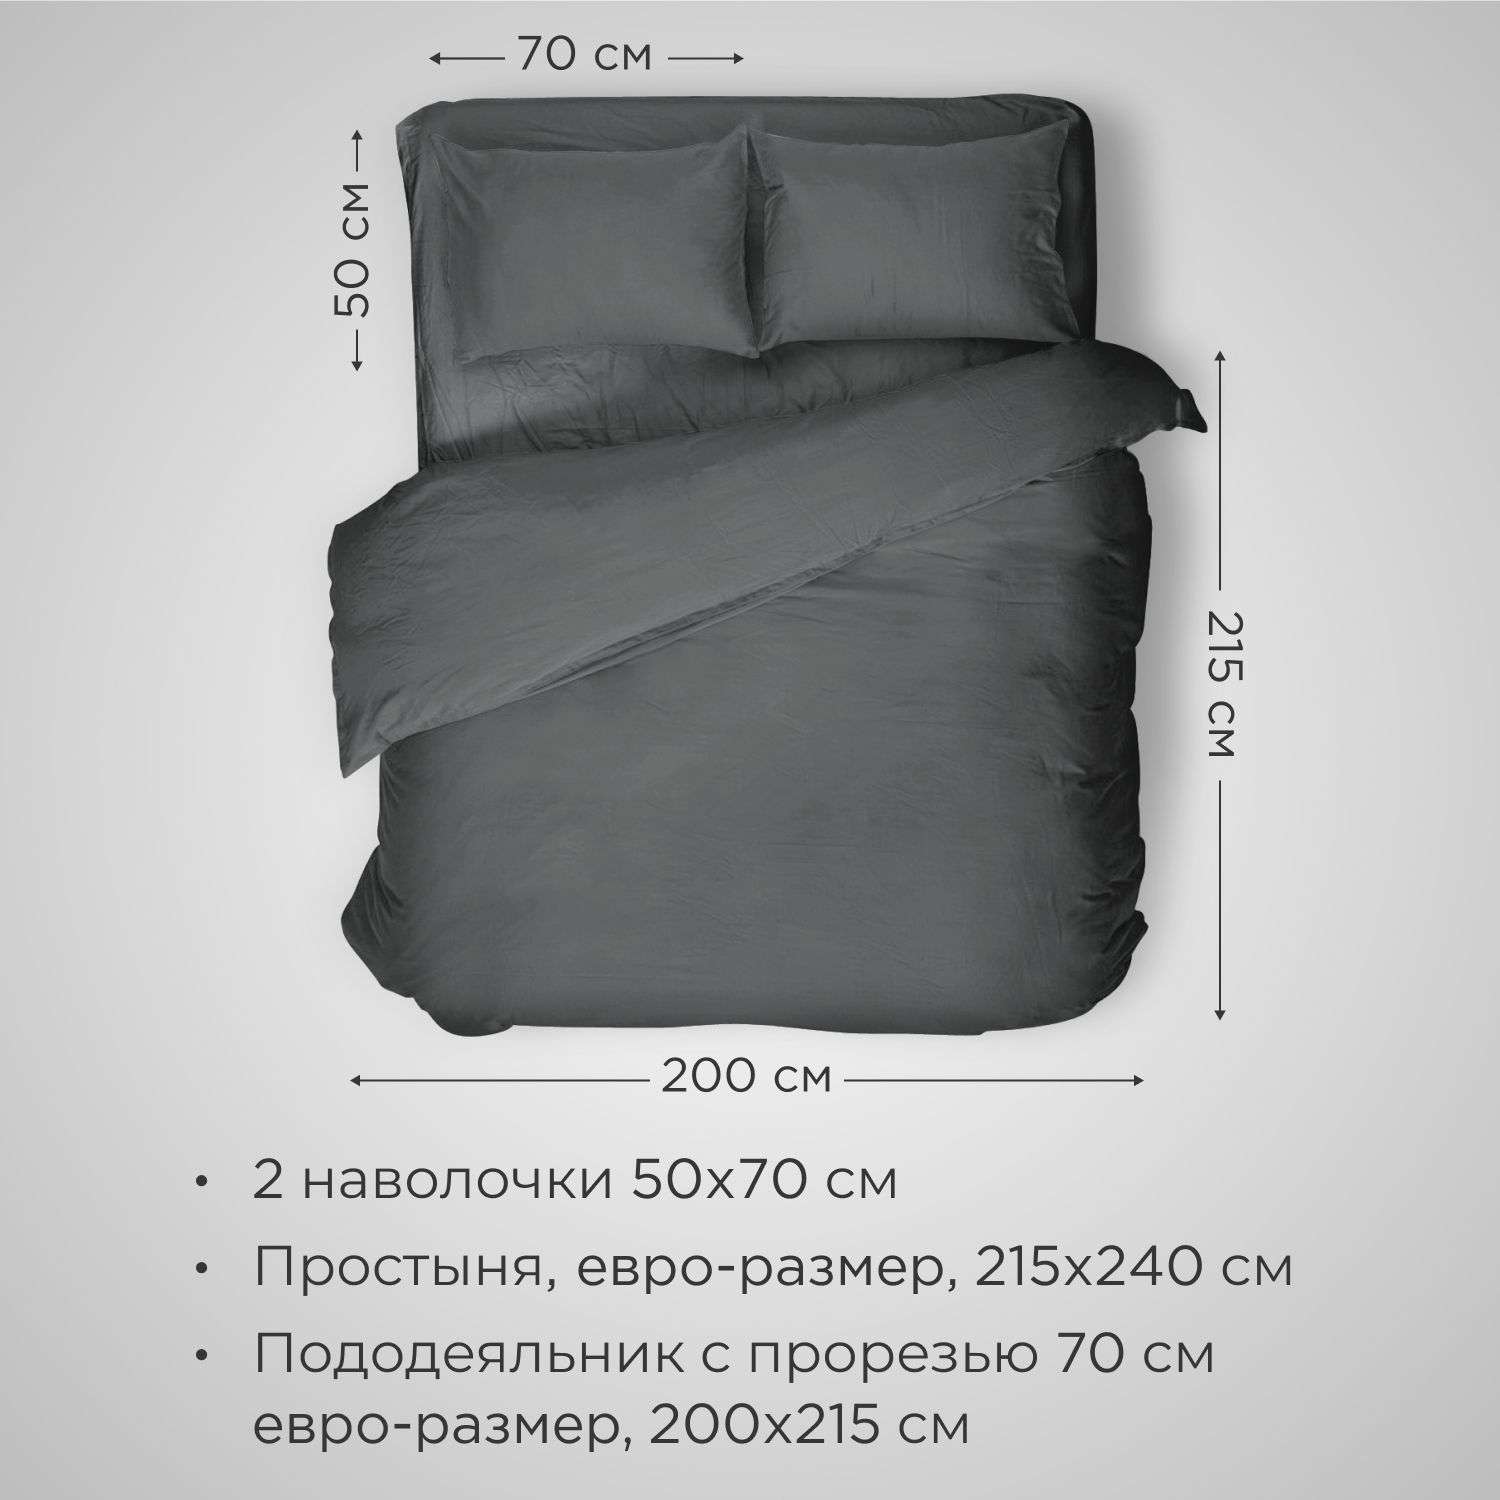 Комплект постельного белья SONNO URBAN FLOWERS евро-размер цвет Матовый графит - фото 2